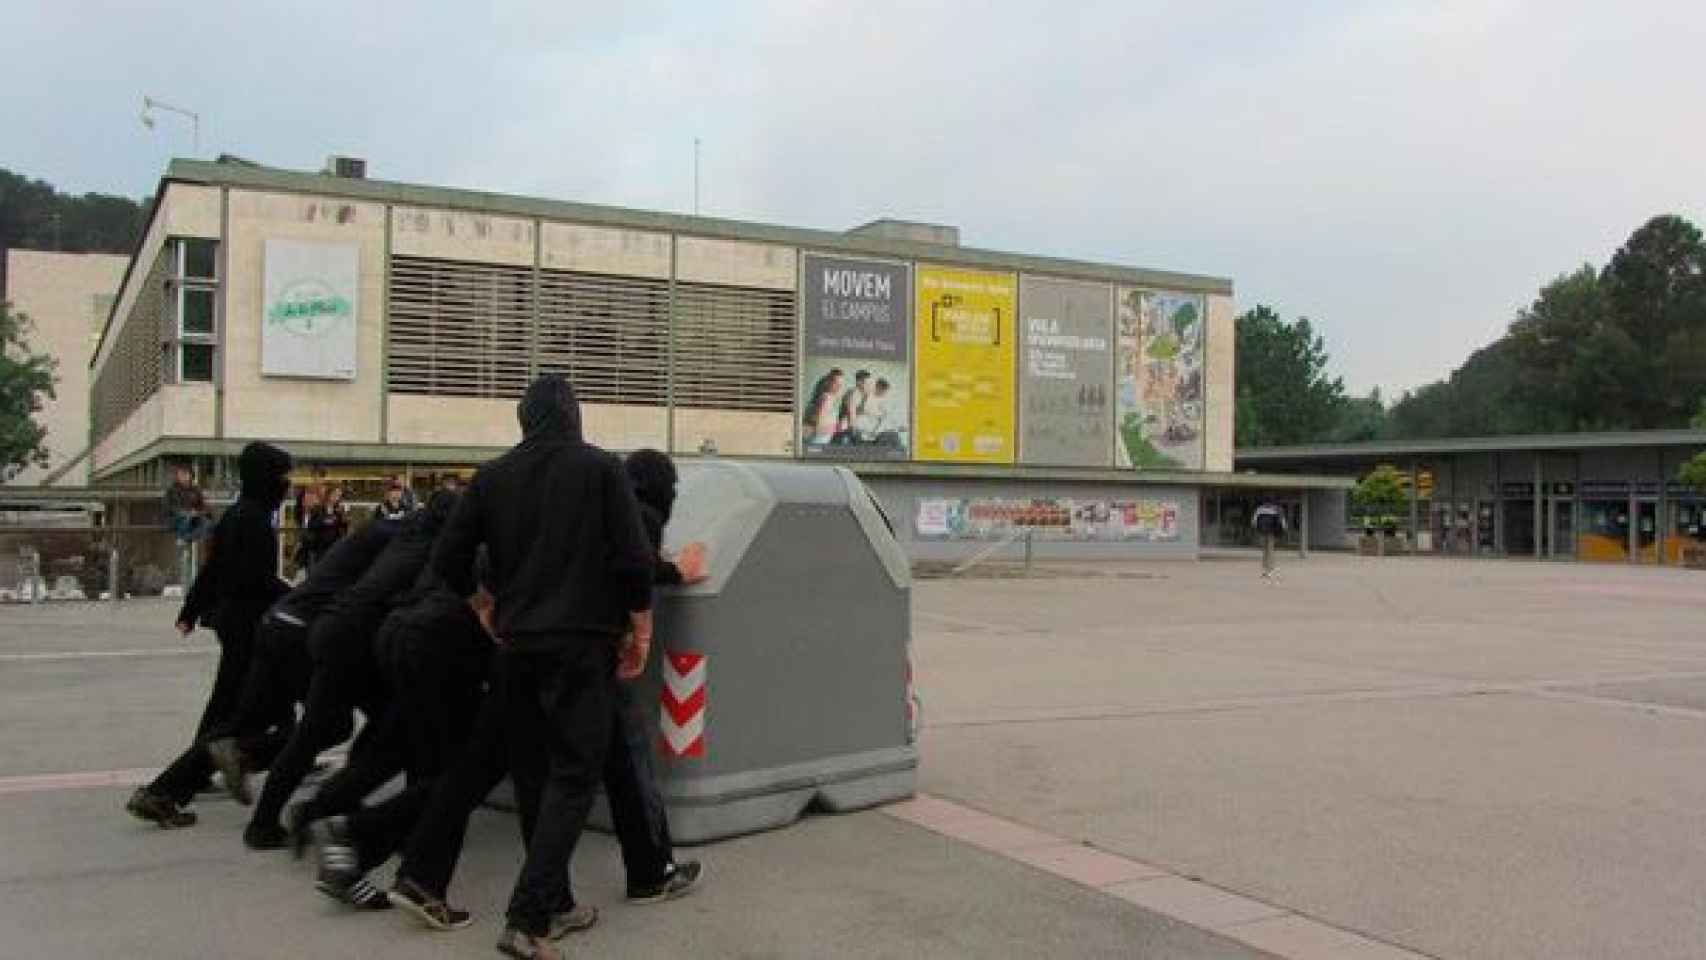 Estudiantes de la UAB vuelcan un contenedor en señal de protesta en el primer día de huelga / CG